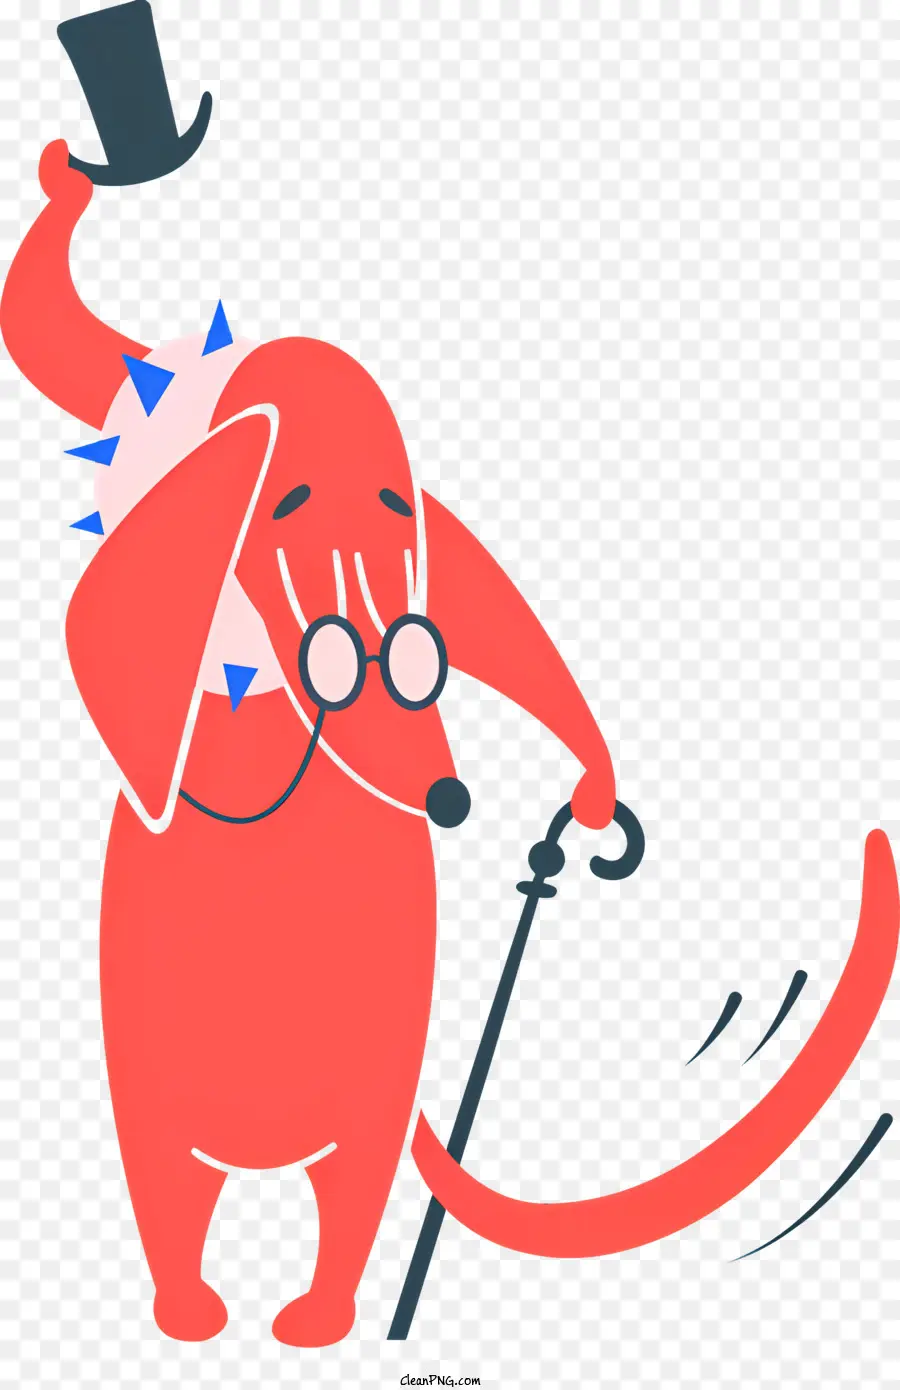 phim hoạt hình con chó - Hoạt hình chó nhảy múa với chiếc mũ và mía